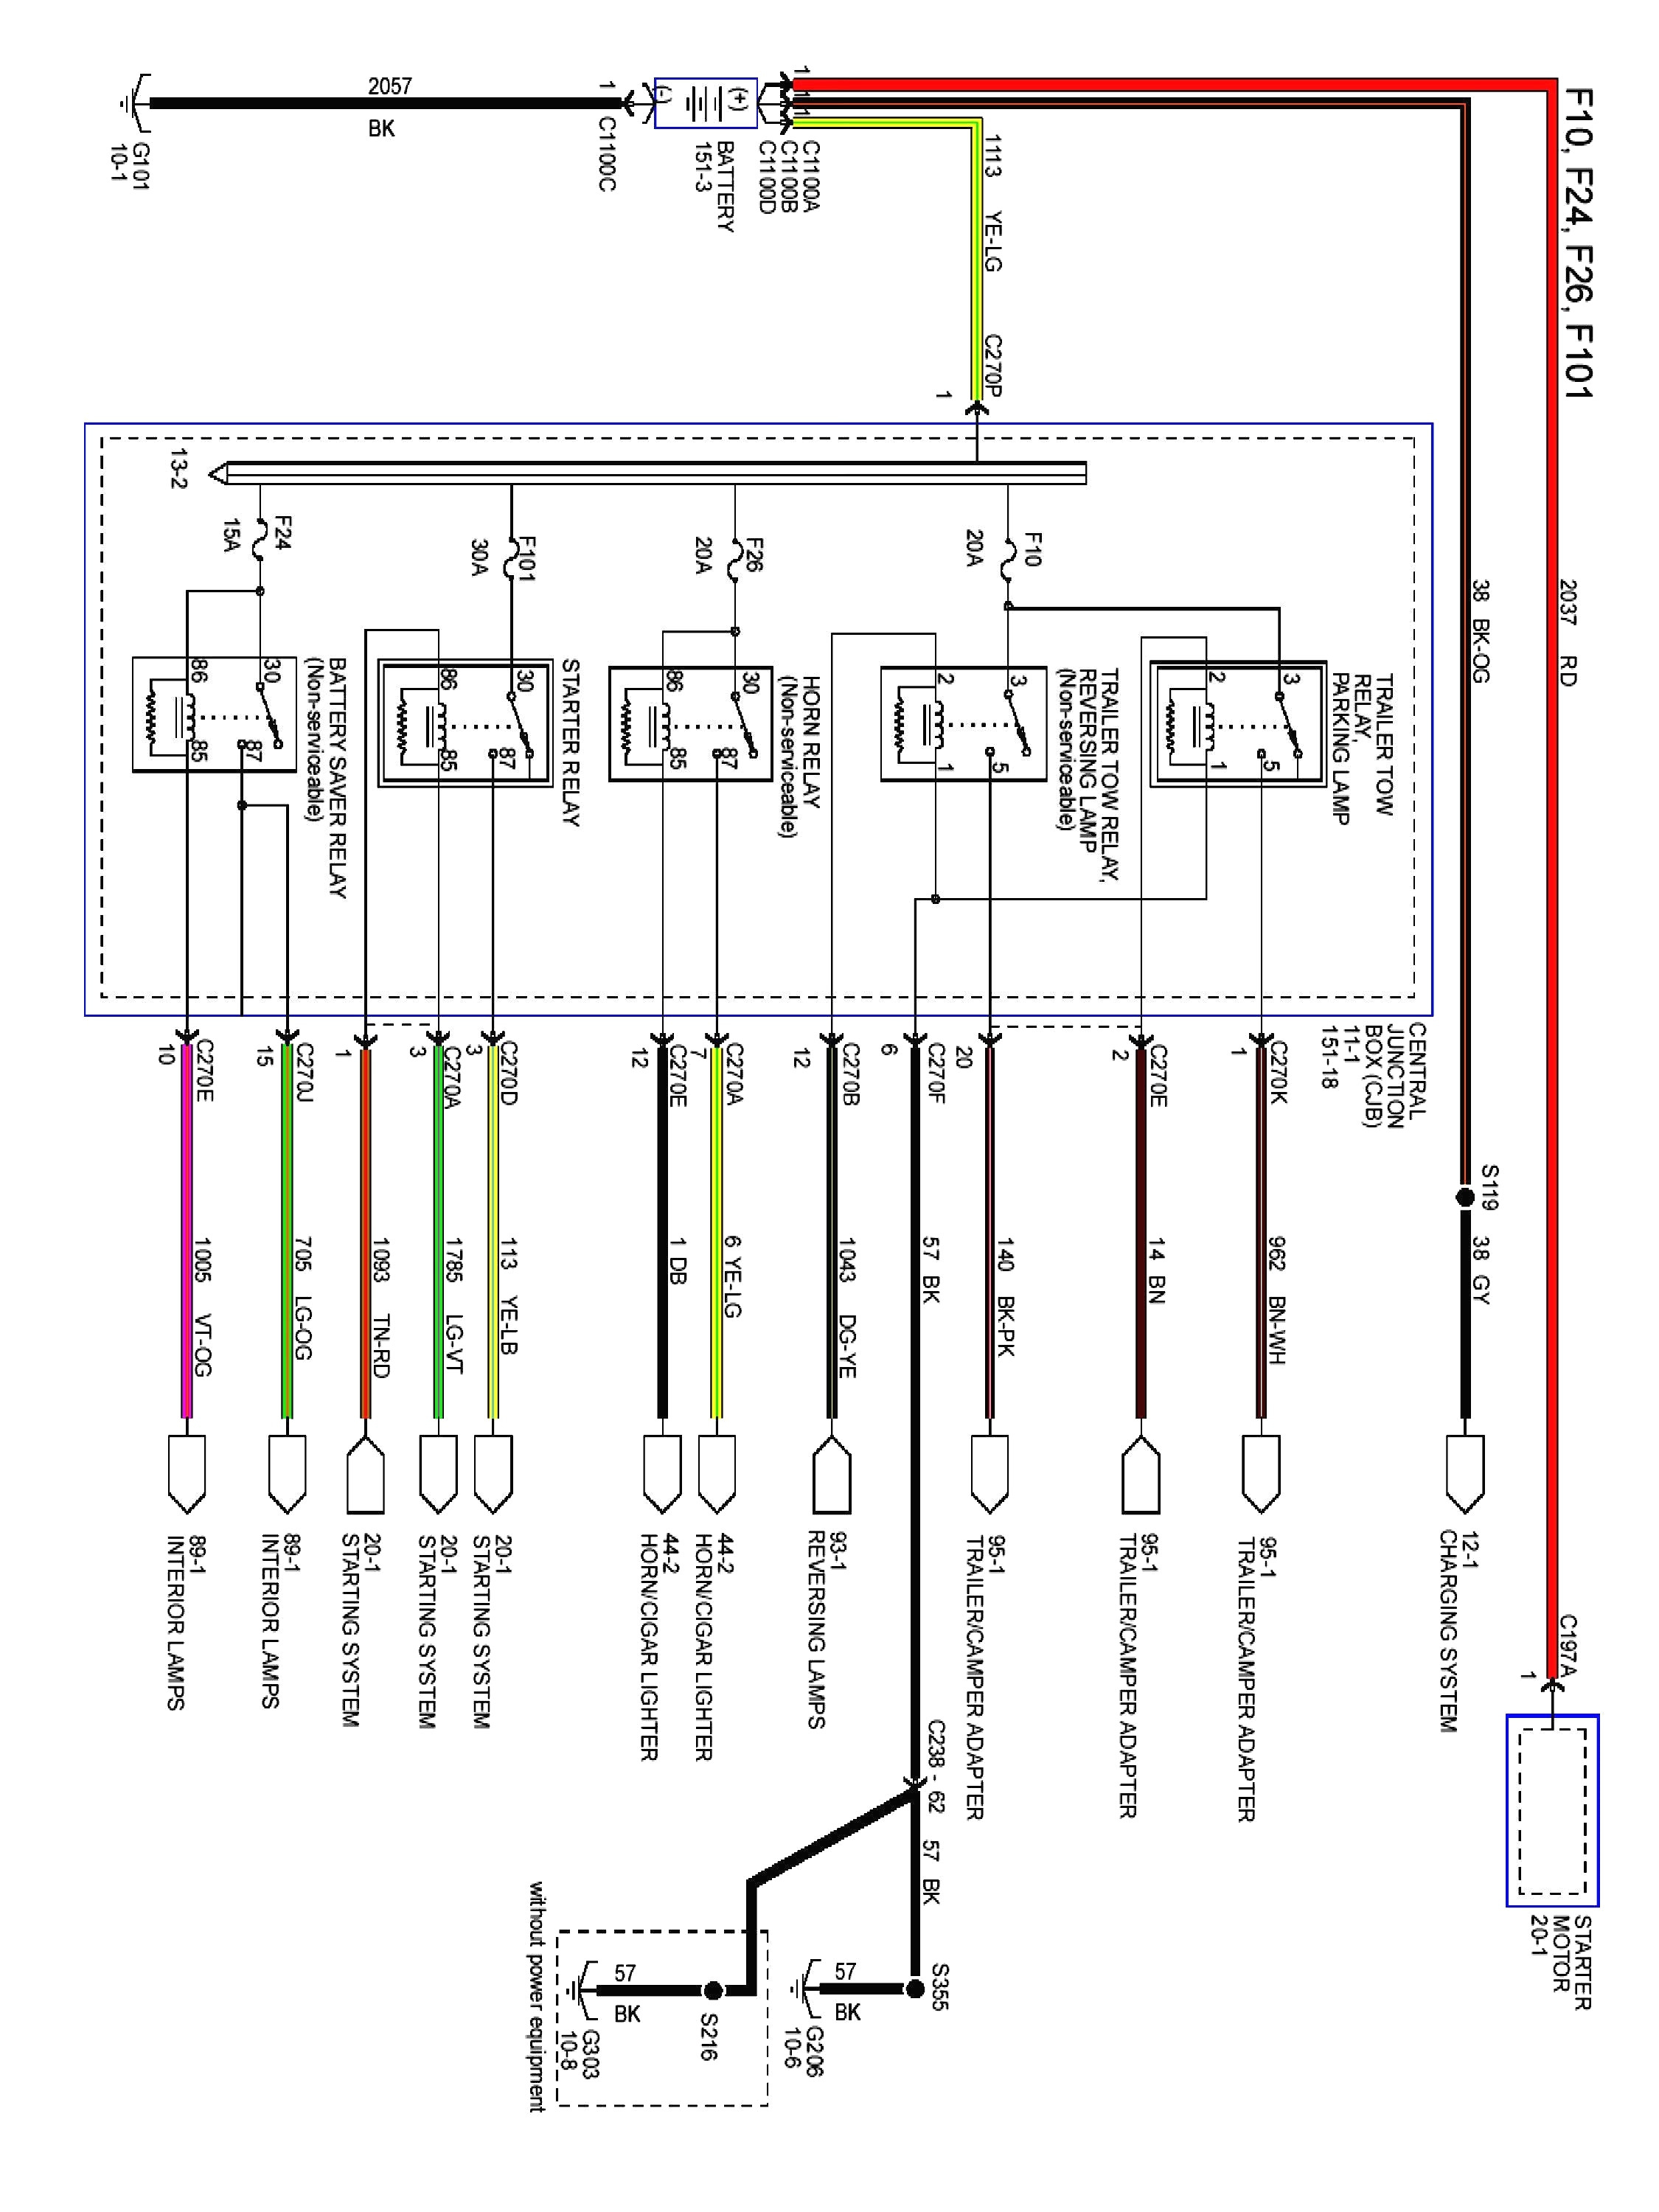 motorola astro radio wiring diagram wiring diagram tagsastro wiring diagram wiring diagram query motorola astro radio